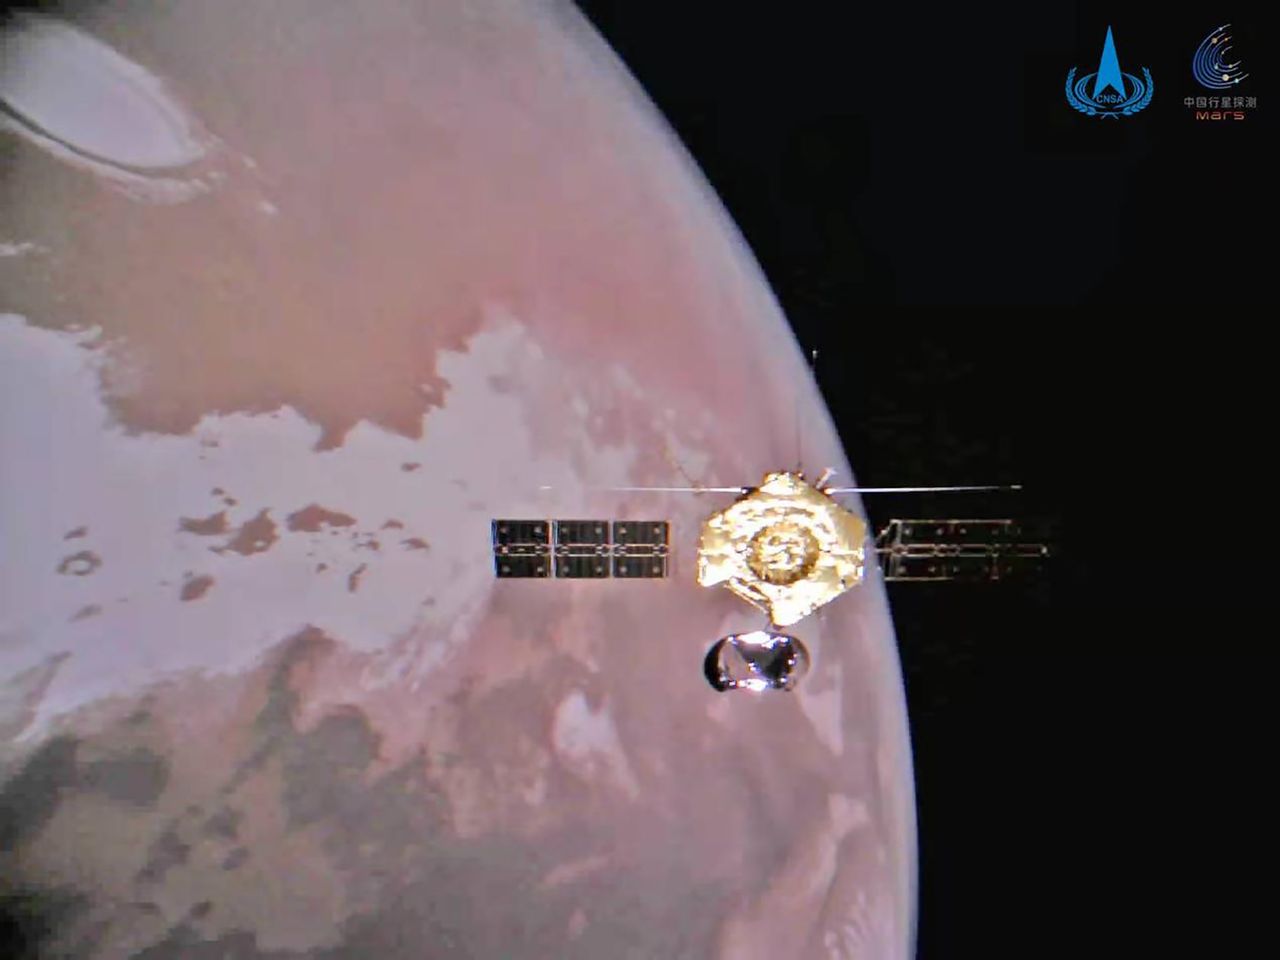 Chińczycy obserwują Marsa. Zdjęcia z sondy Tianwen-1 są zaskakująco dobre!